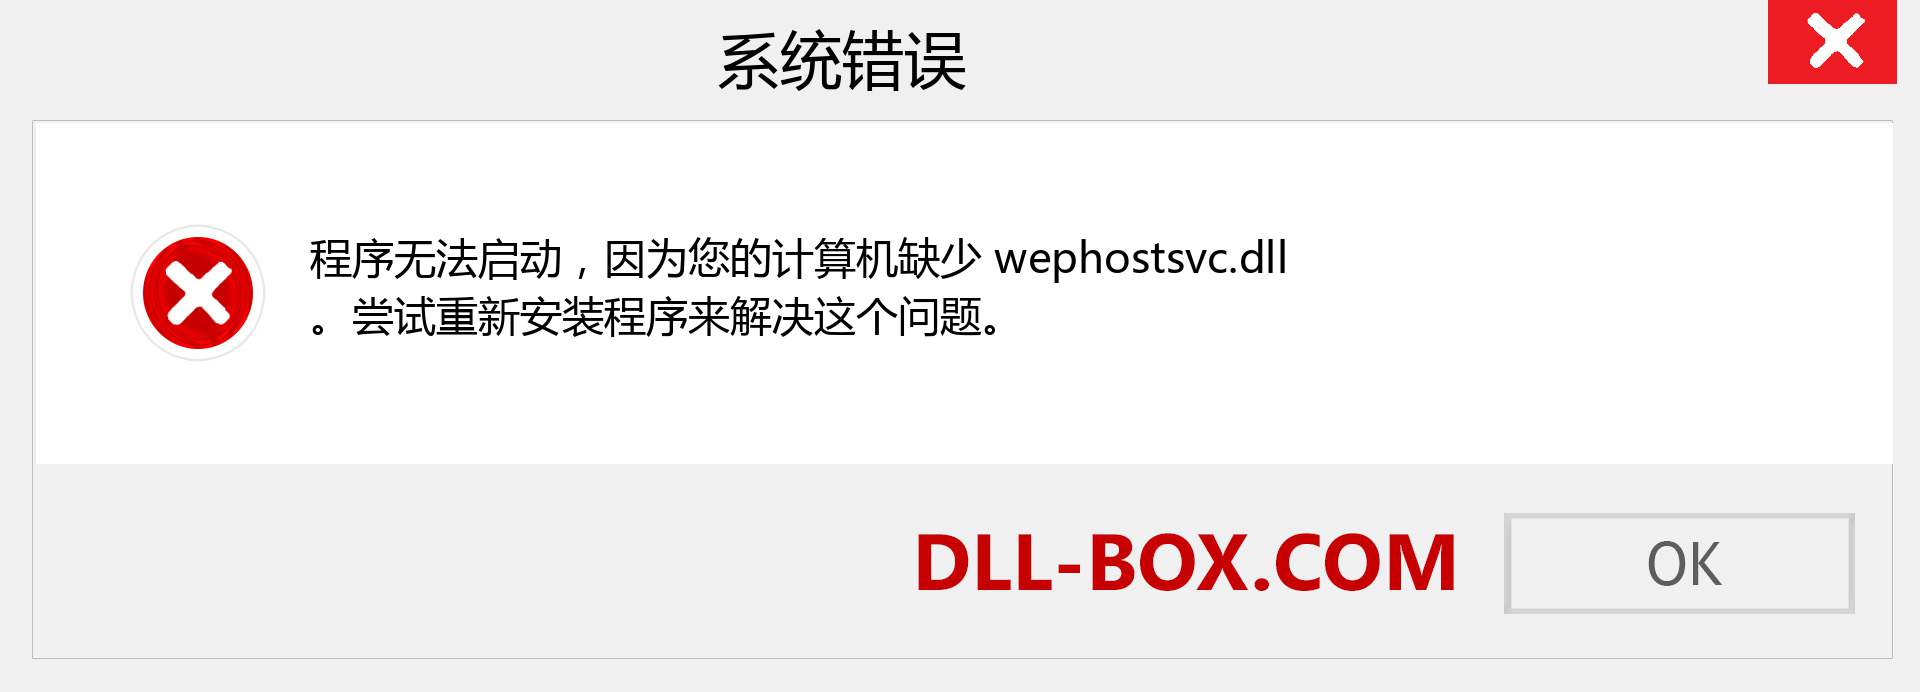 wephostsvc.dll 文件丢失？。 适用于 Windows 7、8、10 的下载 - 修复 Windows、照片、图像上的 wephostsvc dll 丢失错误